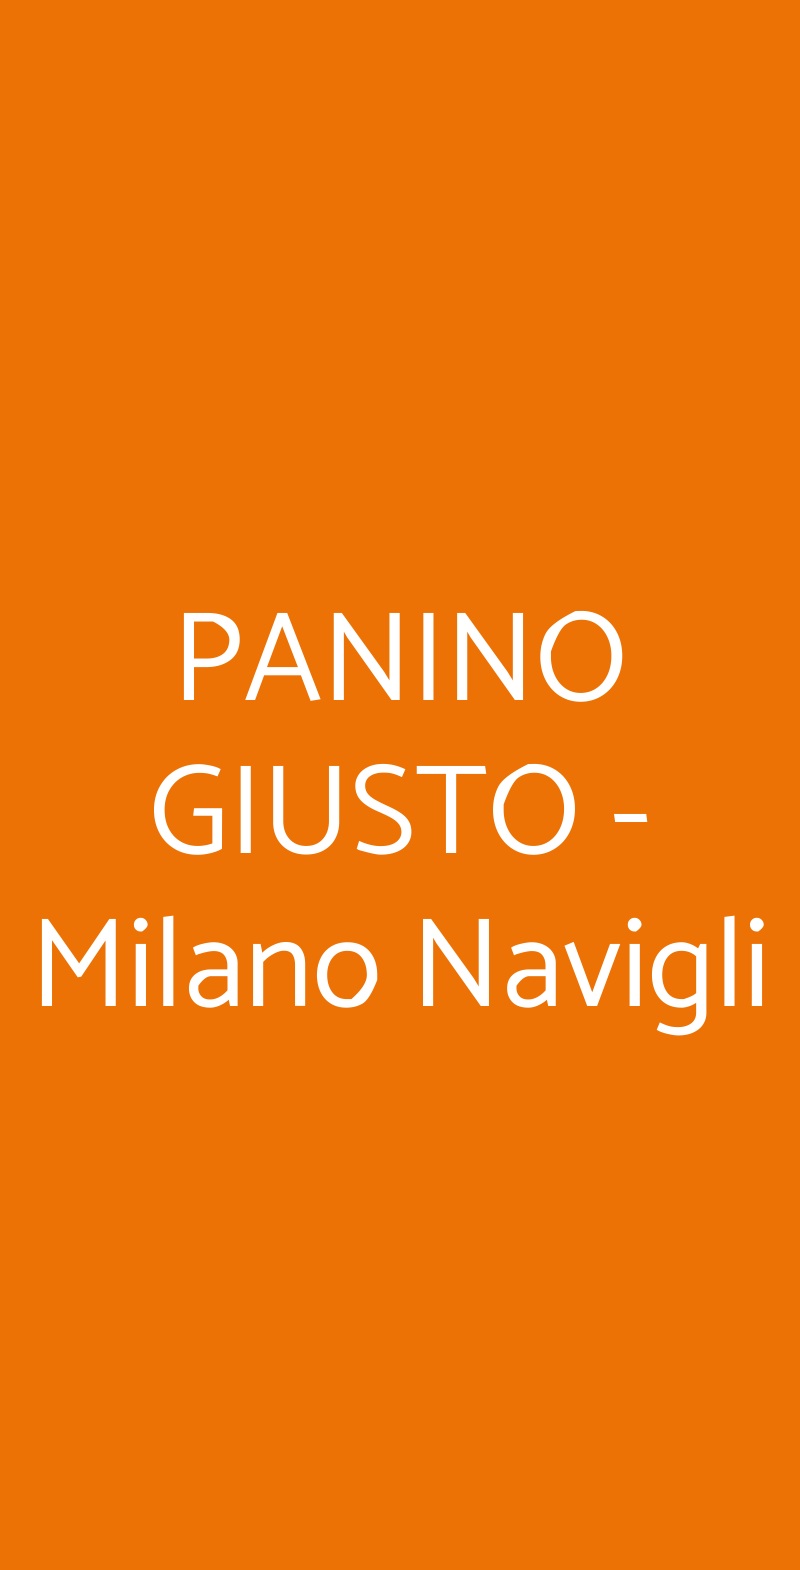 PANINO GIUSTO - Milano Navigli Milano menù 1 pagina